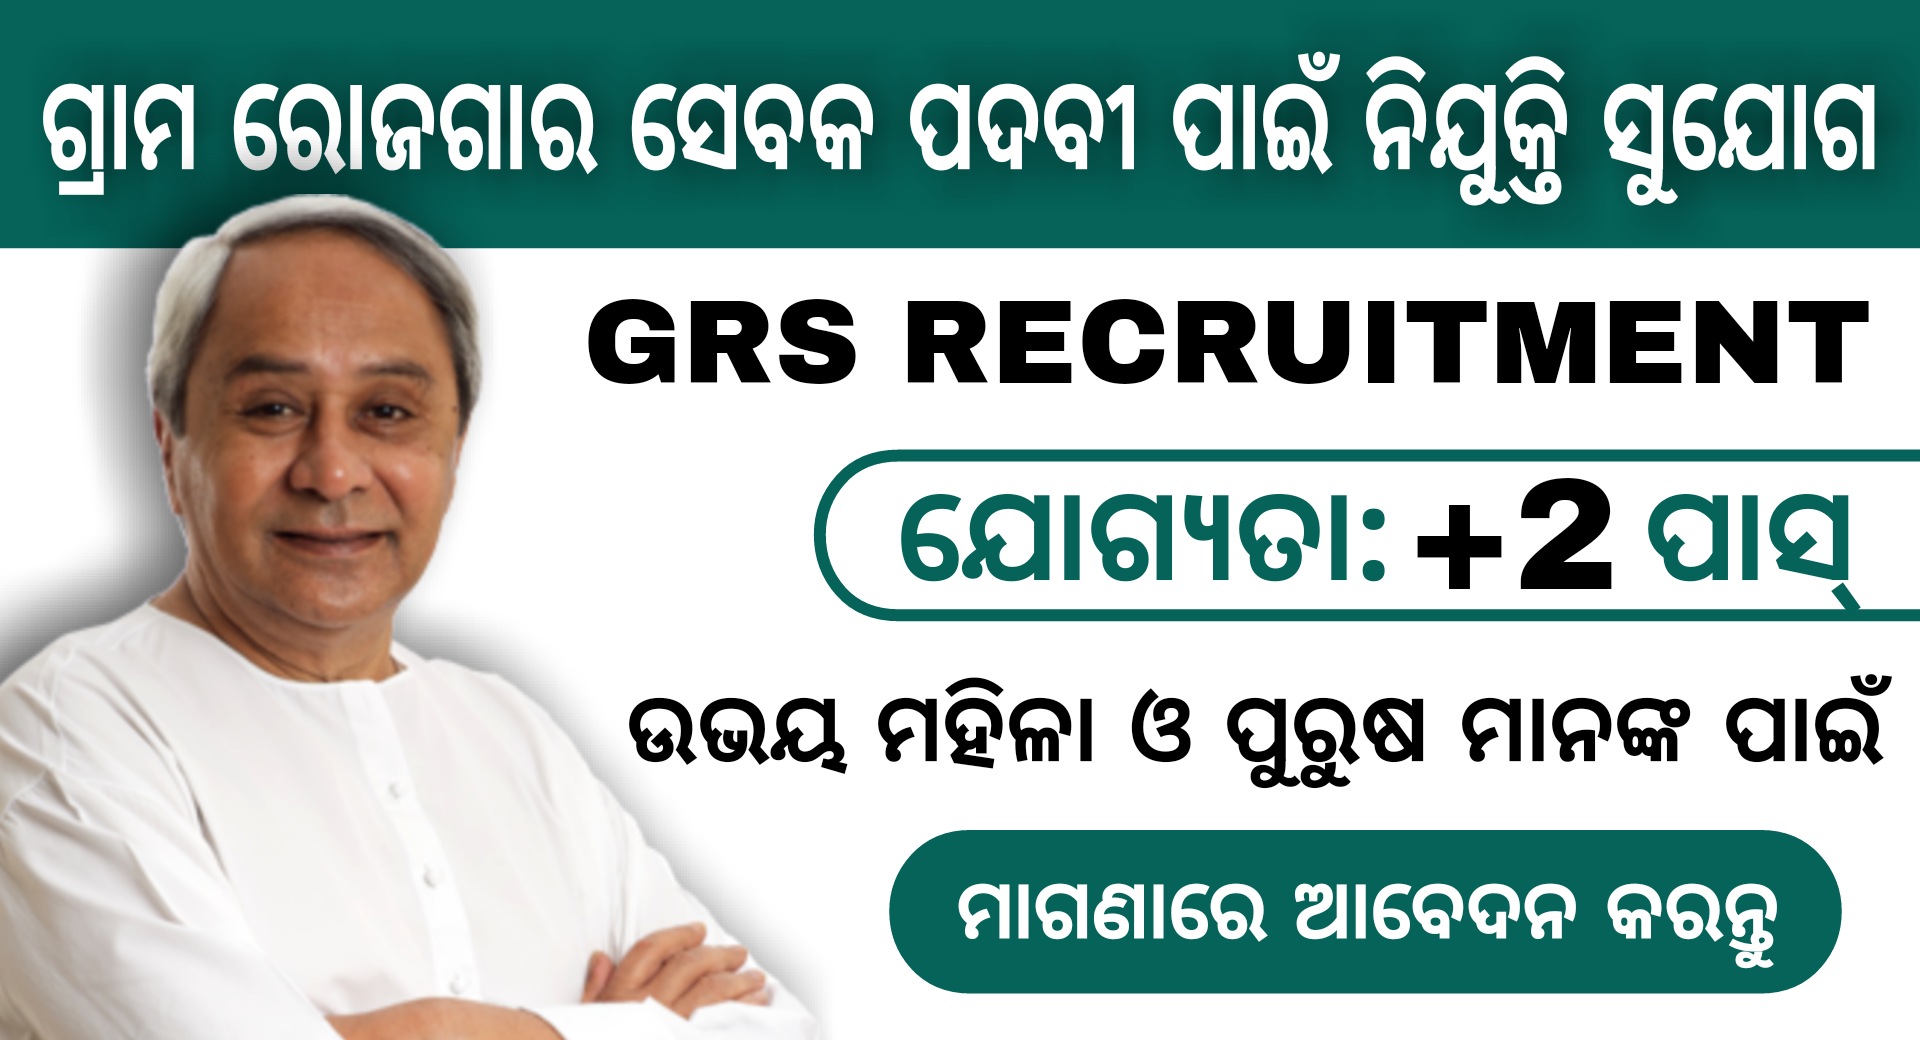 Koraput District GRS Recruitment 2021 – Jobs in Odisha